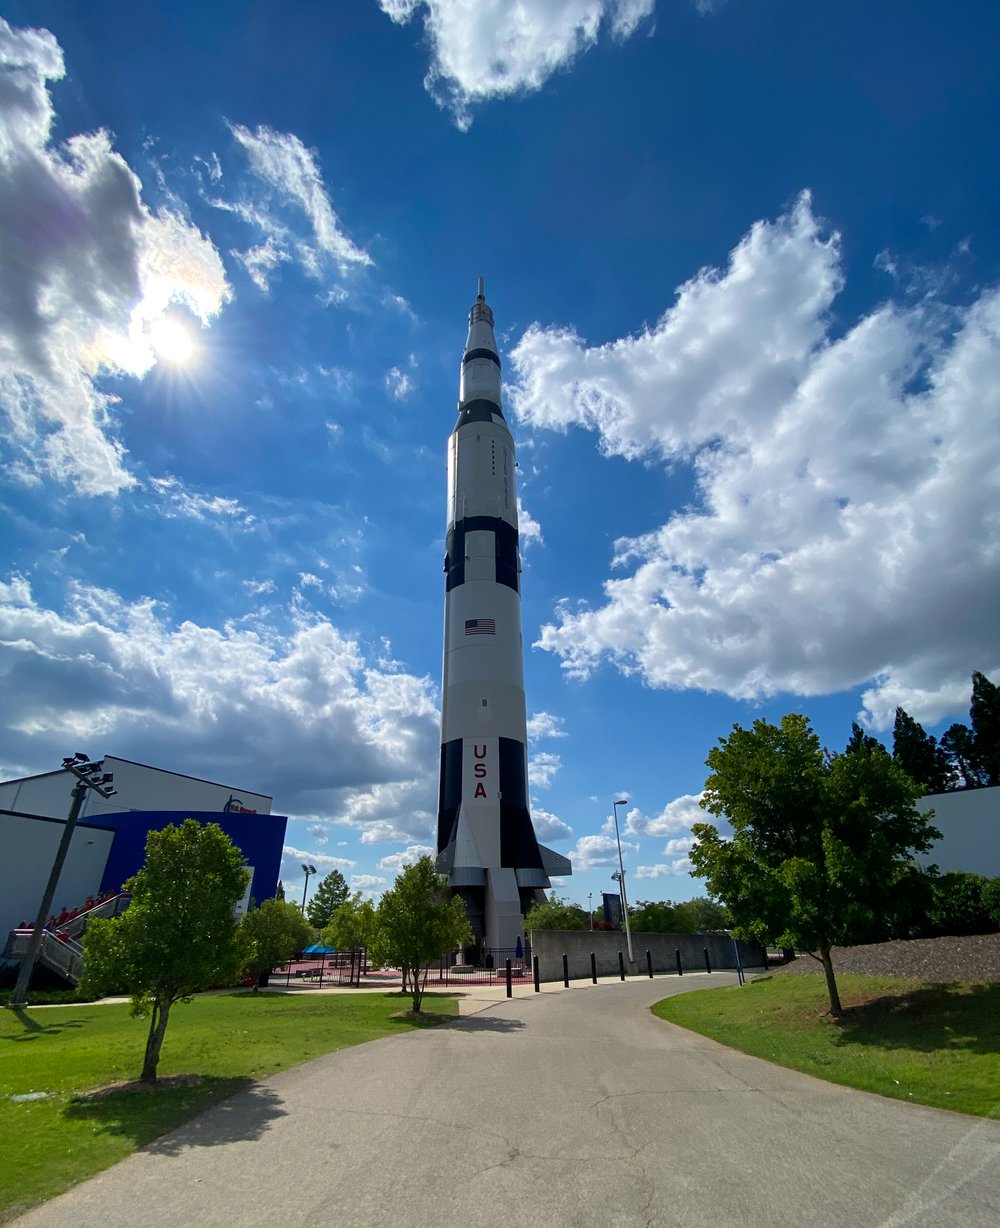 Rocket Center at Huntsville, AL